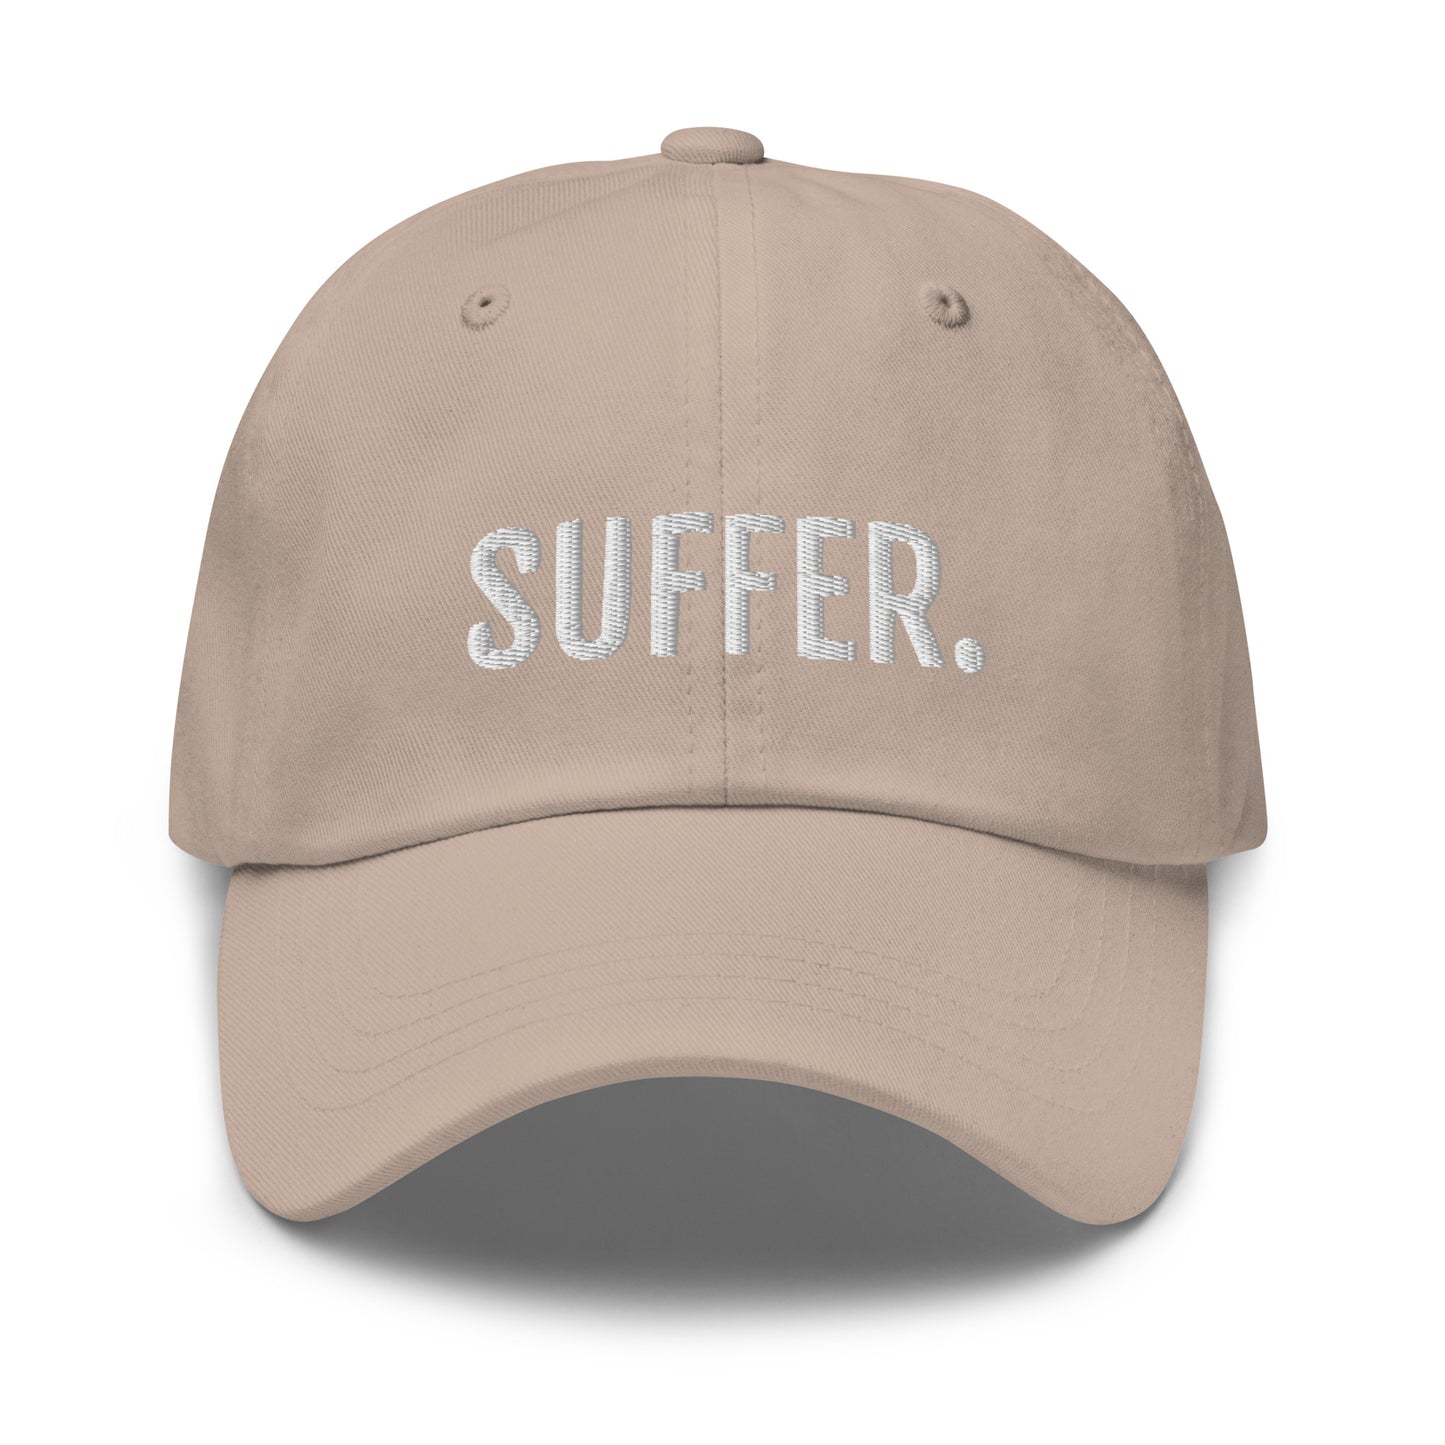 SUFFER. Dad hat